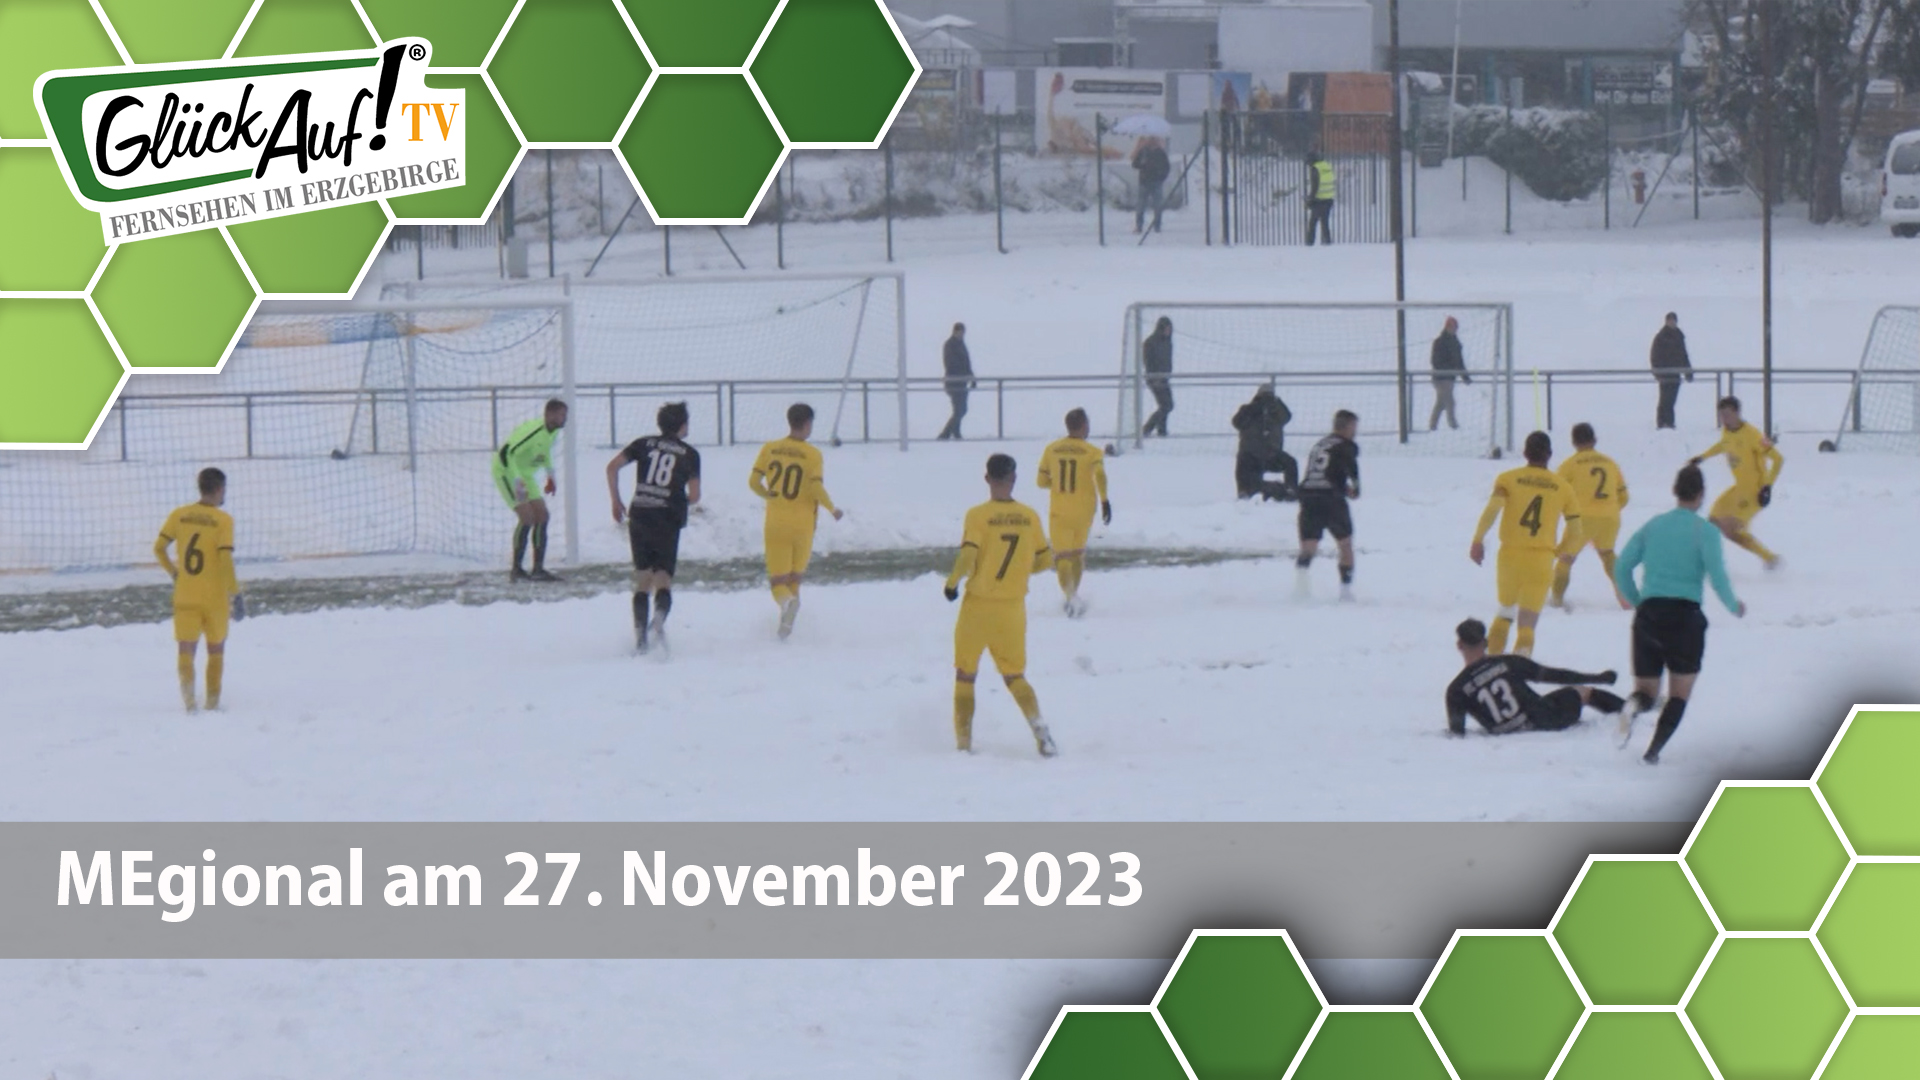 MEgional am 27. November 2023 mit dem Fußballspiel Motor Marienberg gegen Grimma